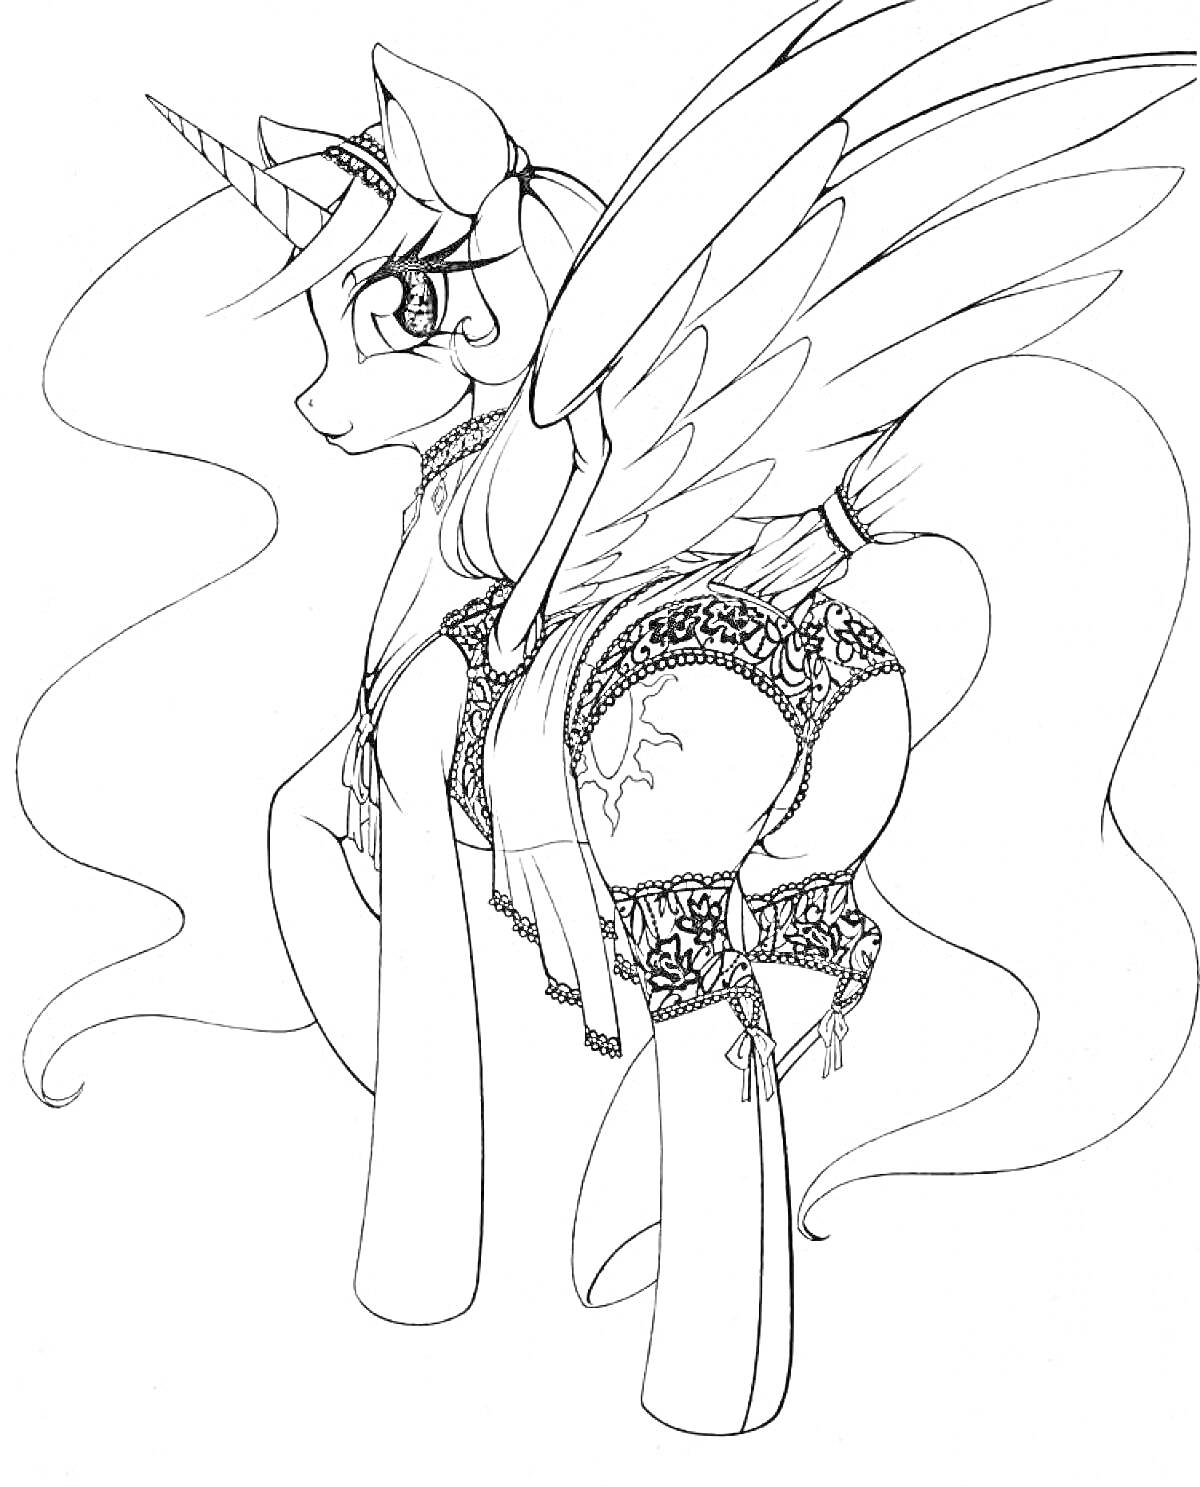 Раскраска Пони-единорог с крыльями, одетый в декоративное белье, с длинной гривой и хвостом